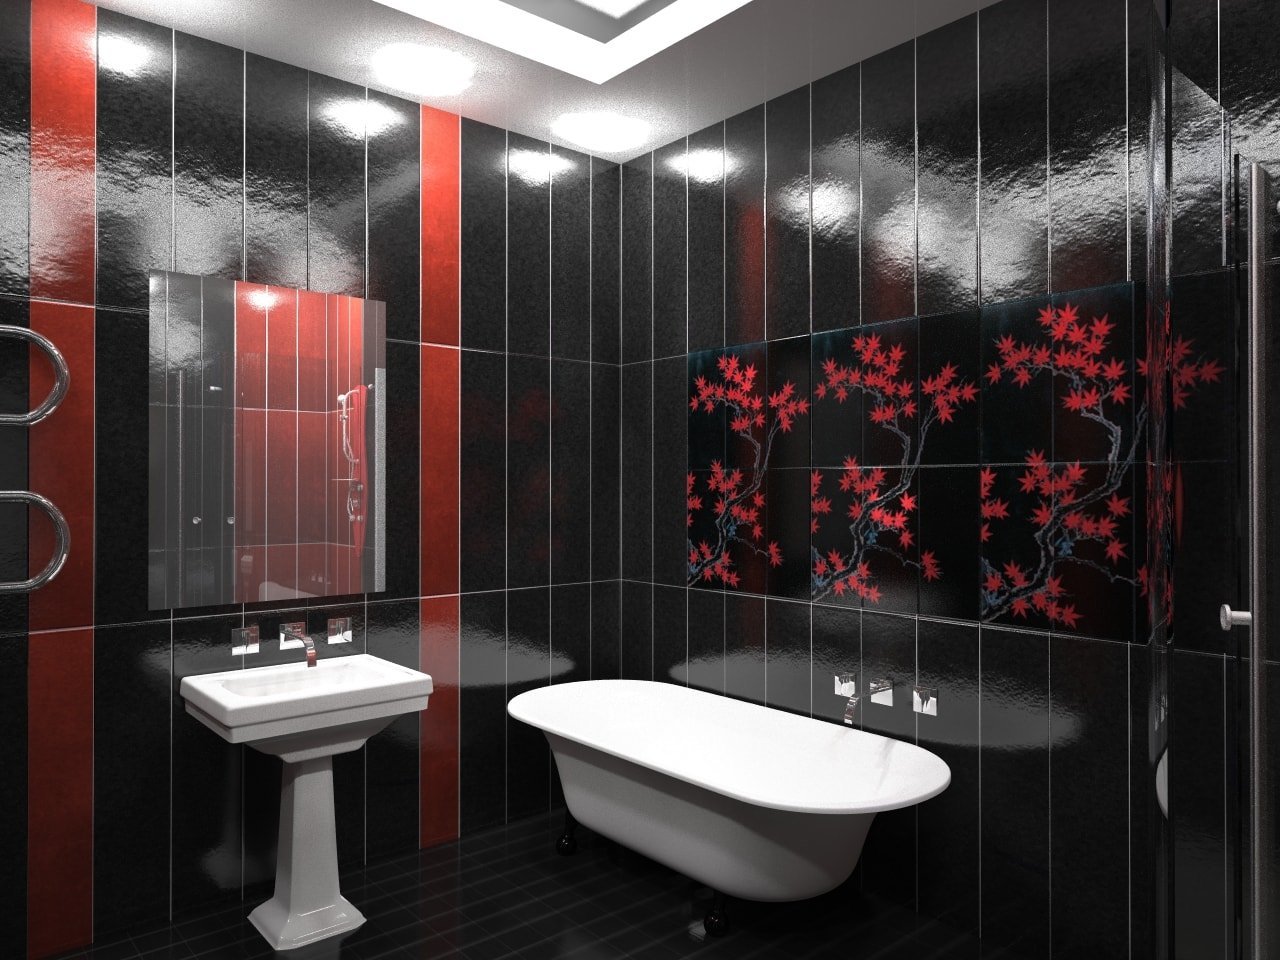 dekor plitki v vannoj 40 - Идеи декора ванной комнаты плиткой +40 фото